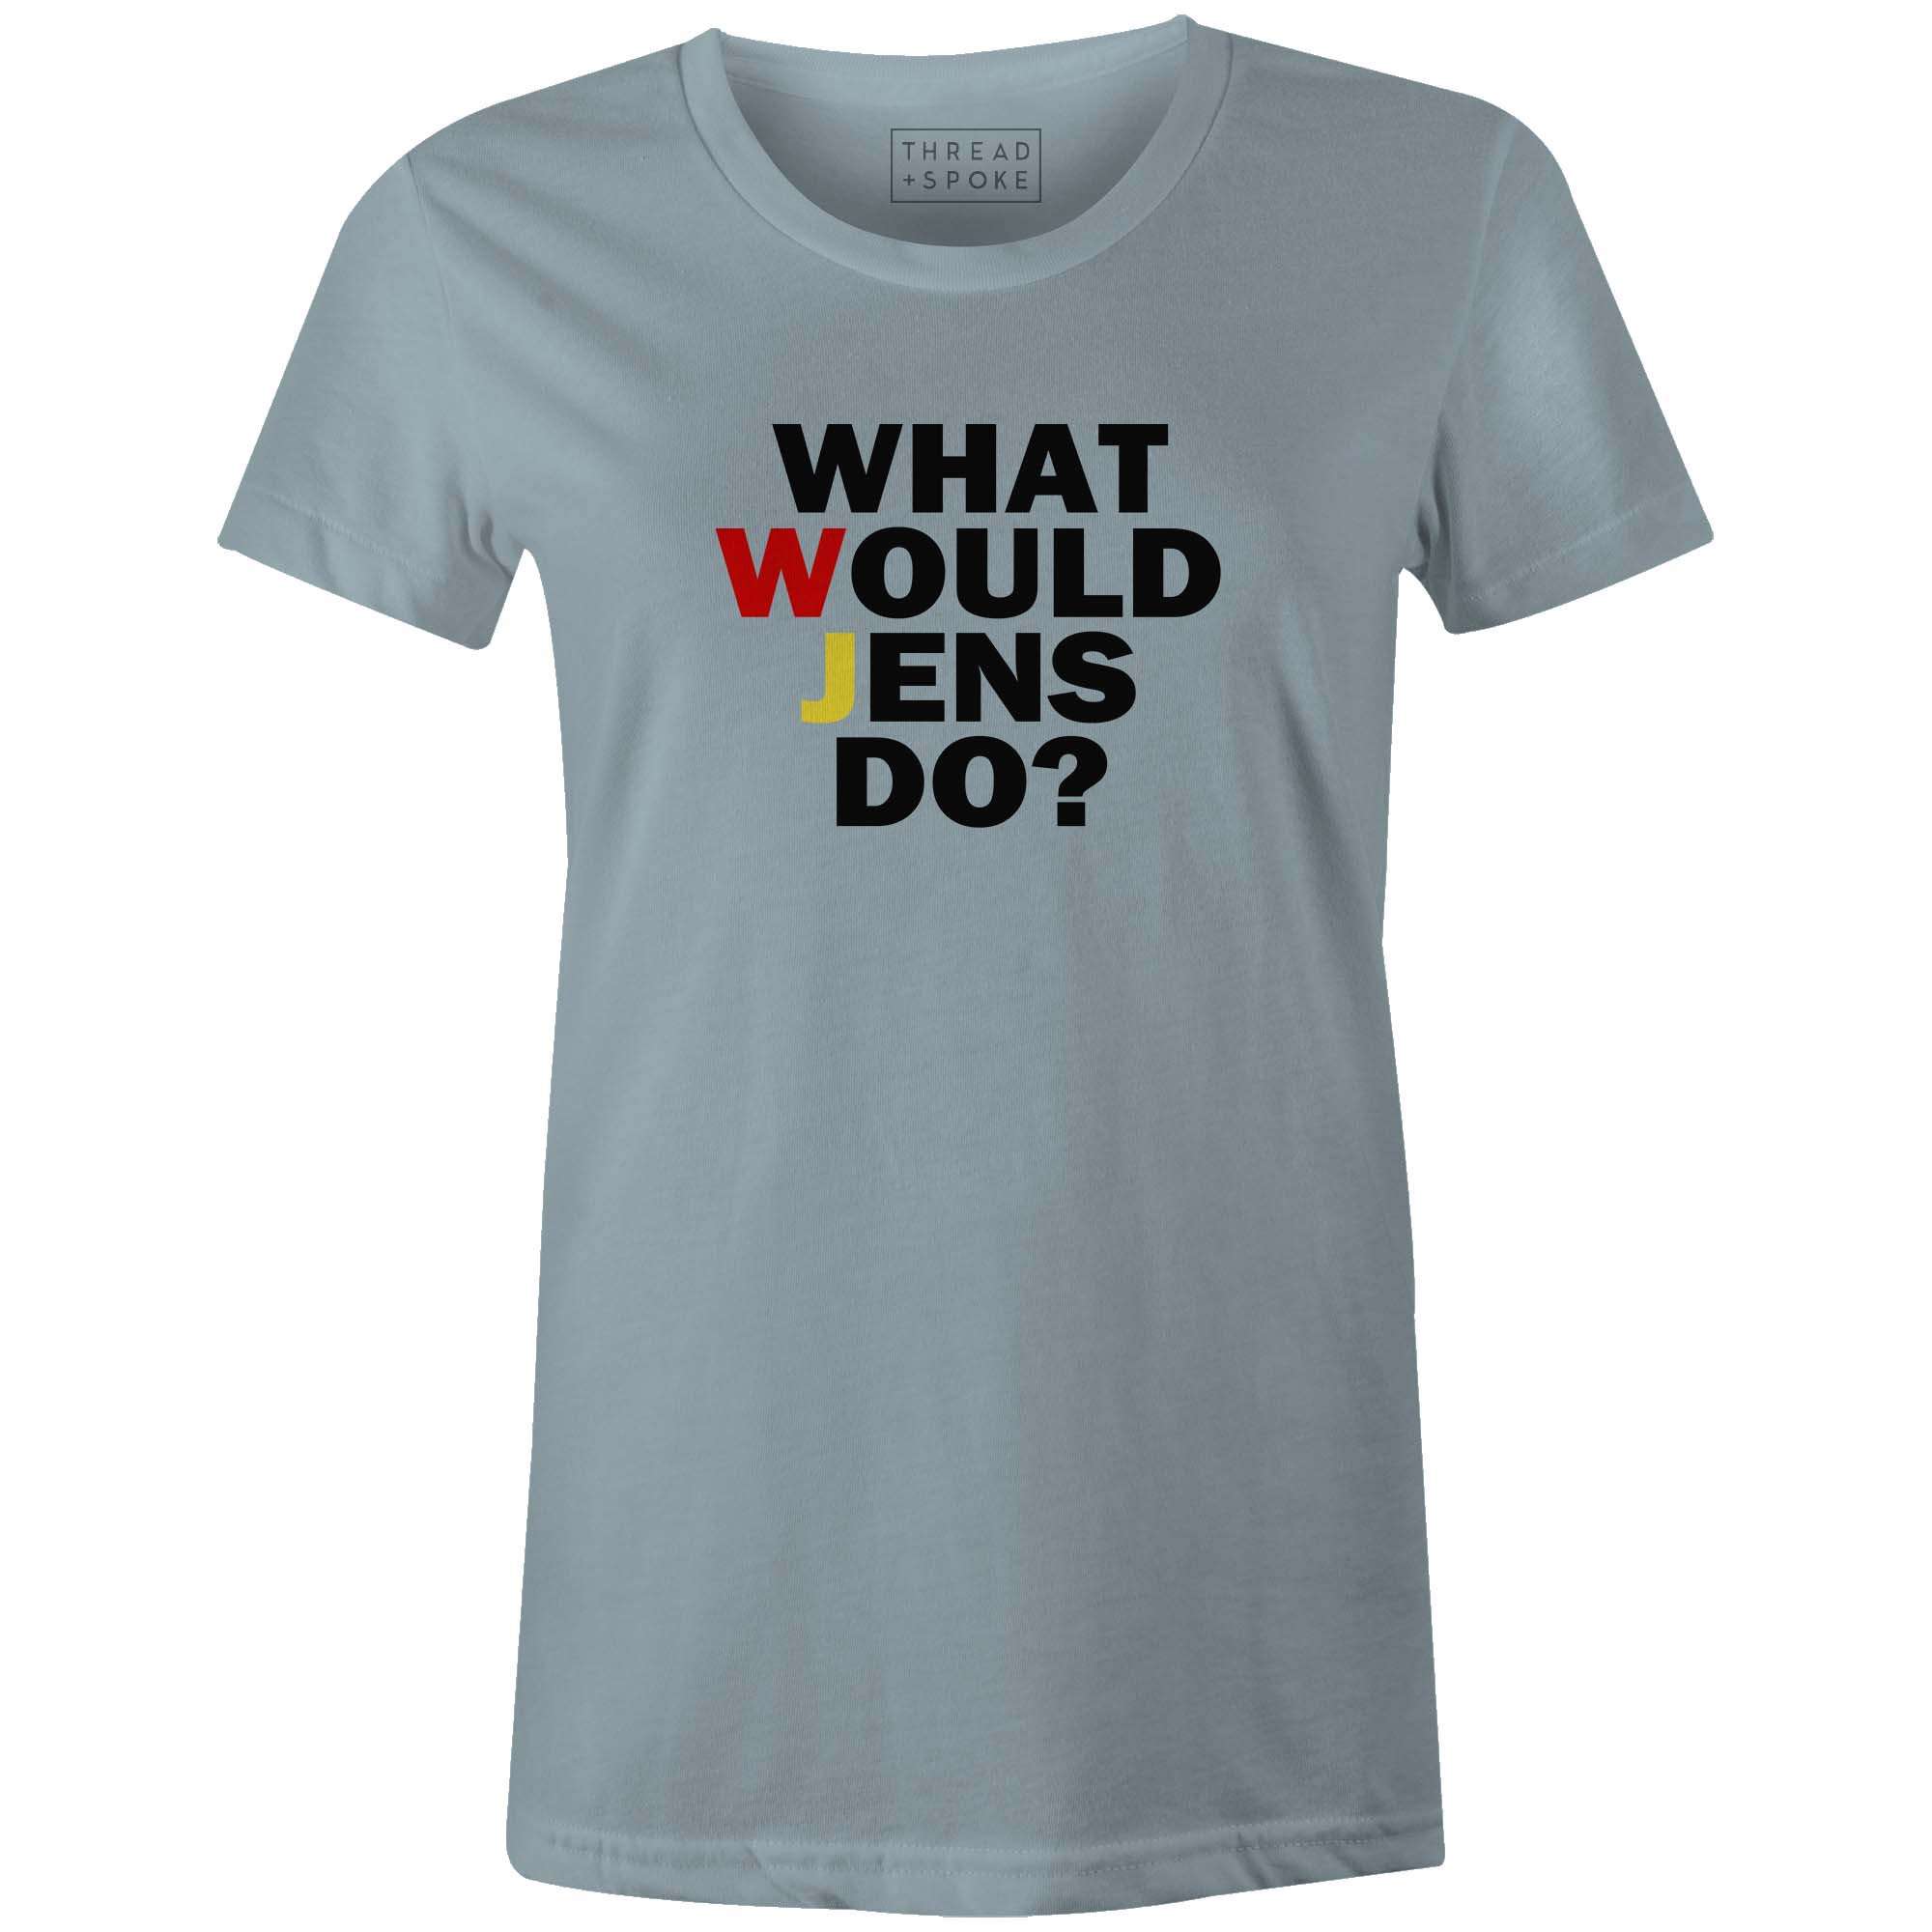 Women's T-shirt - WWJD